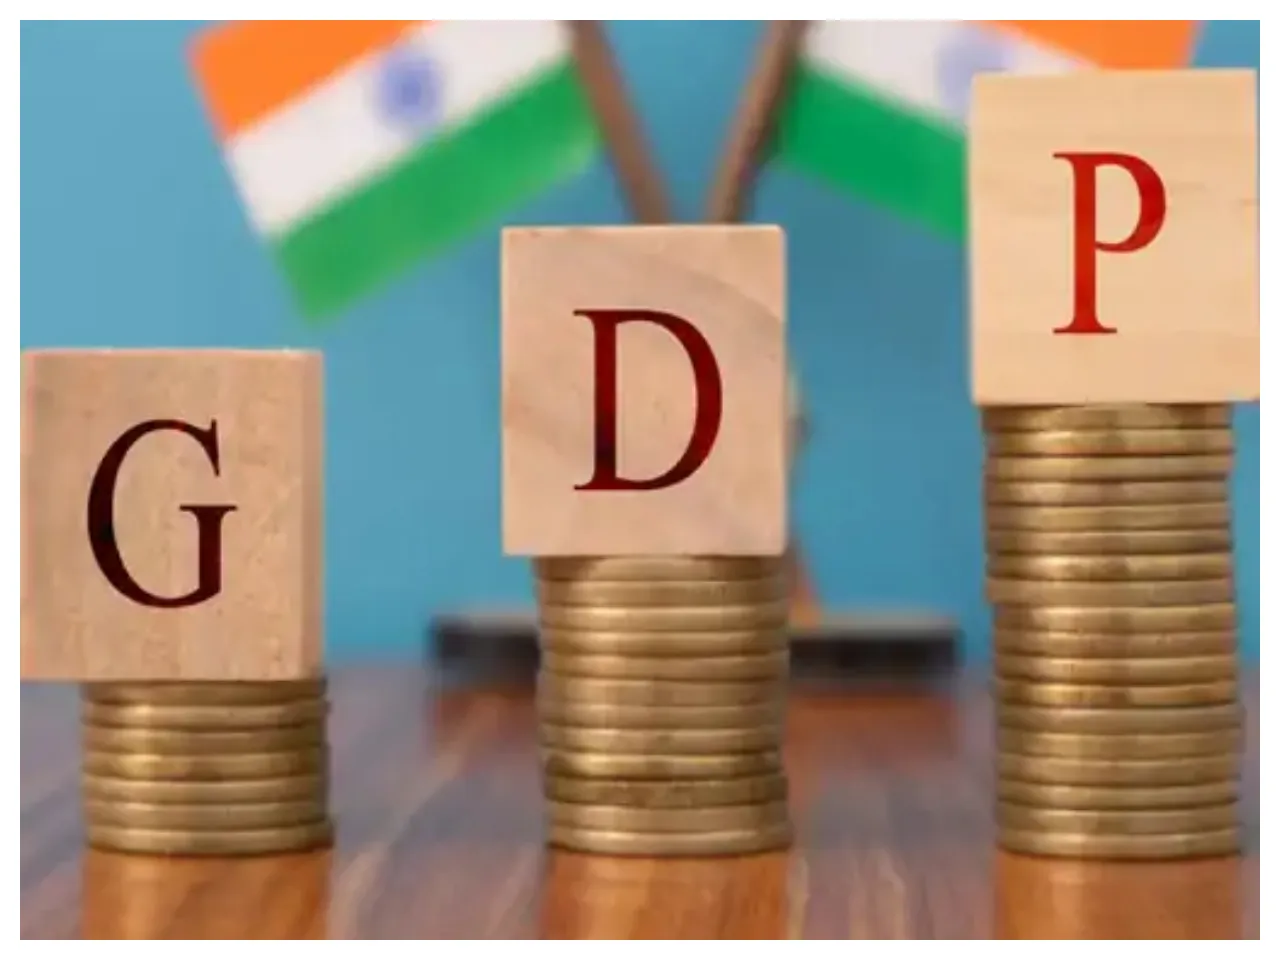 ৩.৫ ট্রিলিয়ন ডলার পার! আকাশ ছোঁয়া হতে পারে ভারতীয় অর্থনীতির GDP